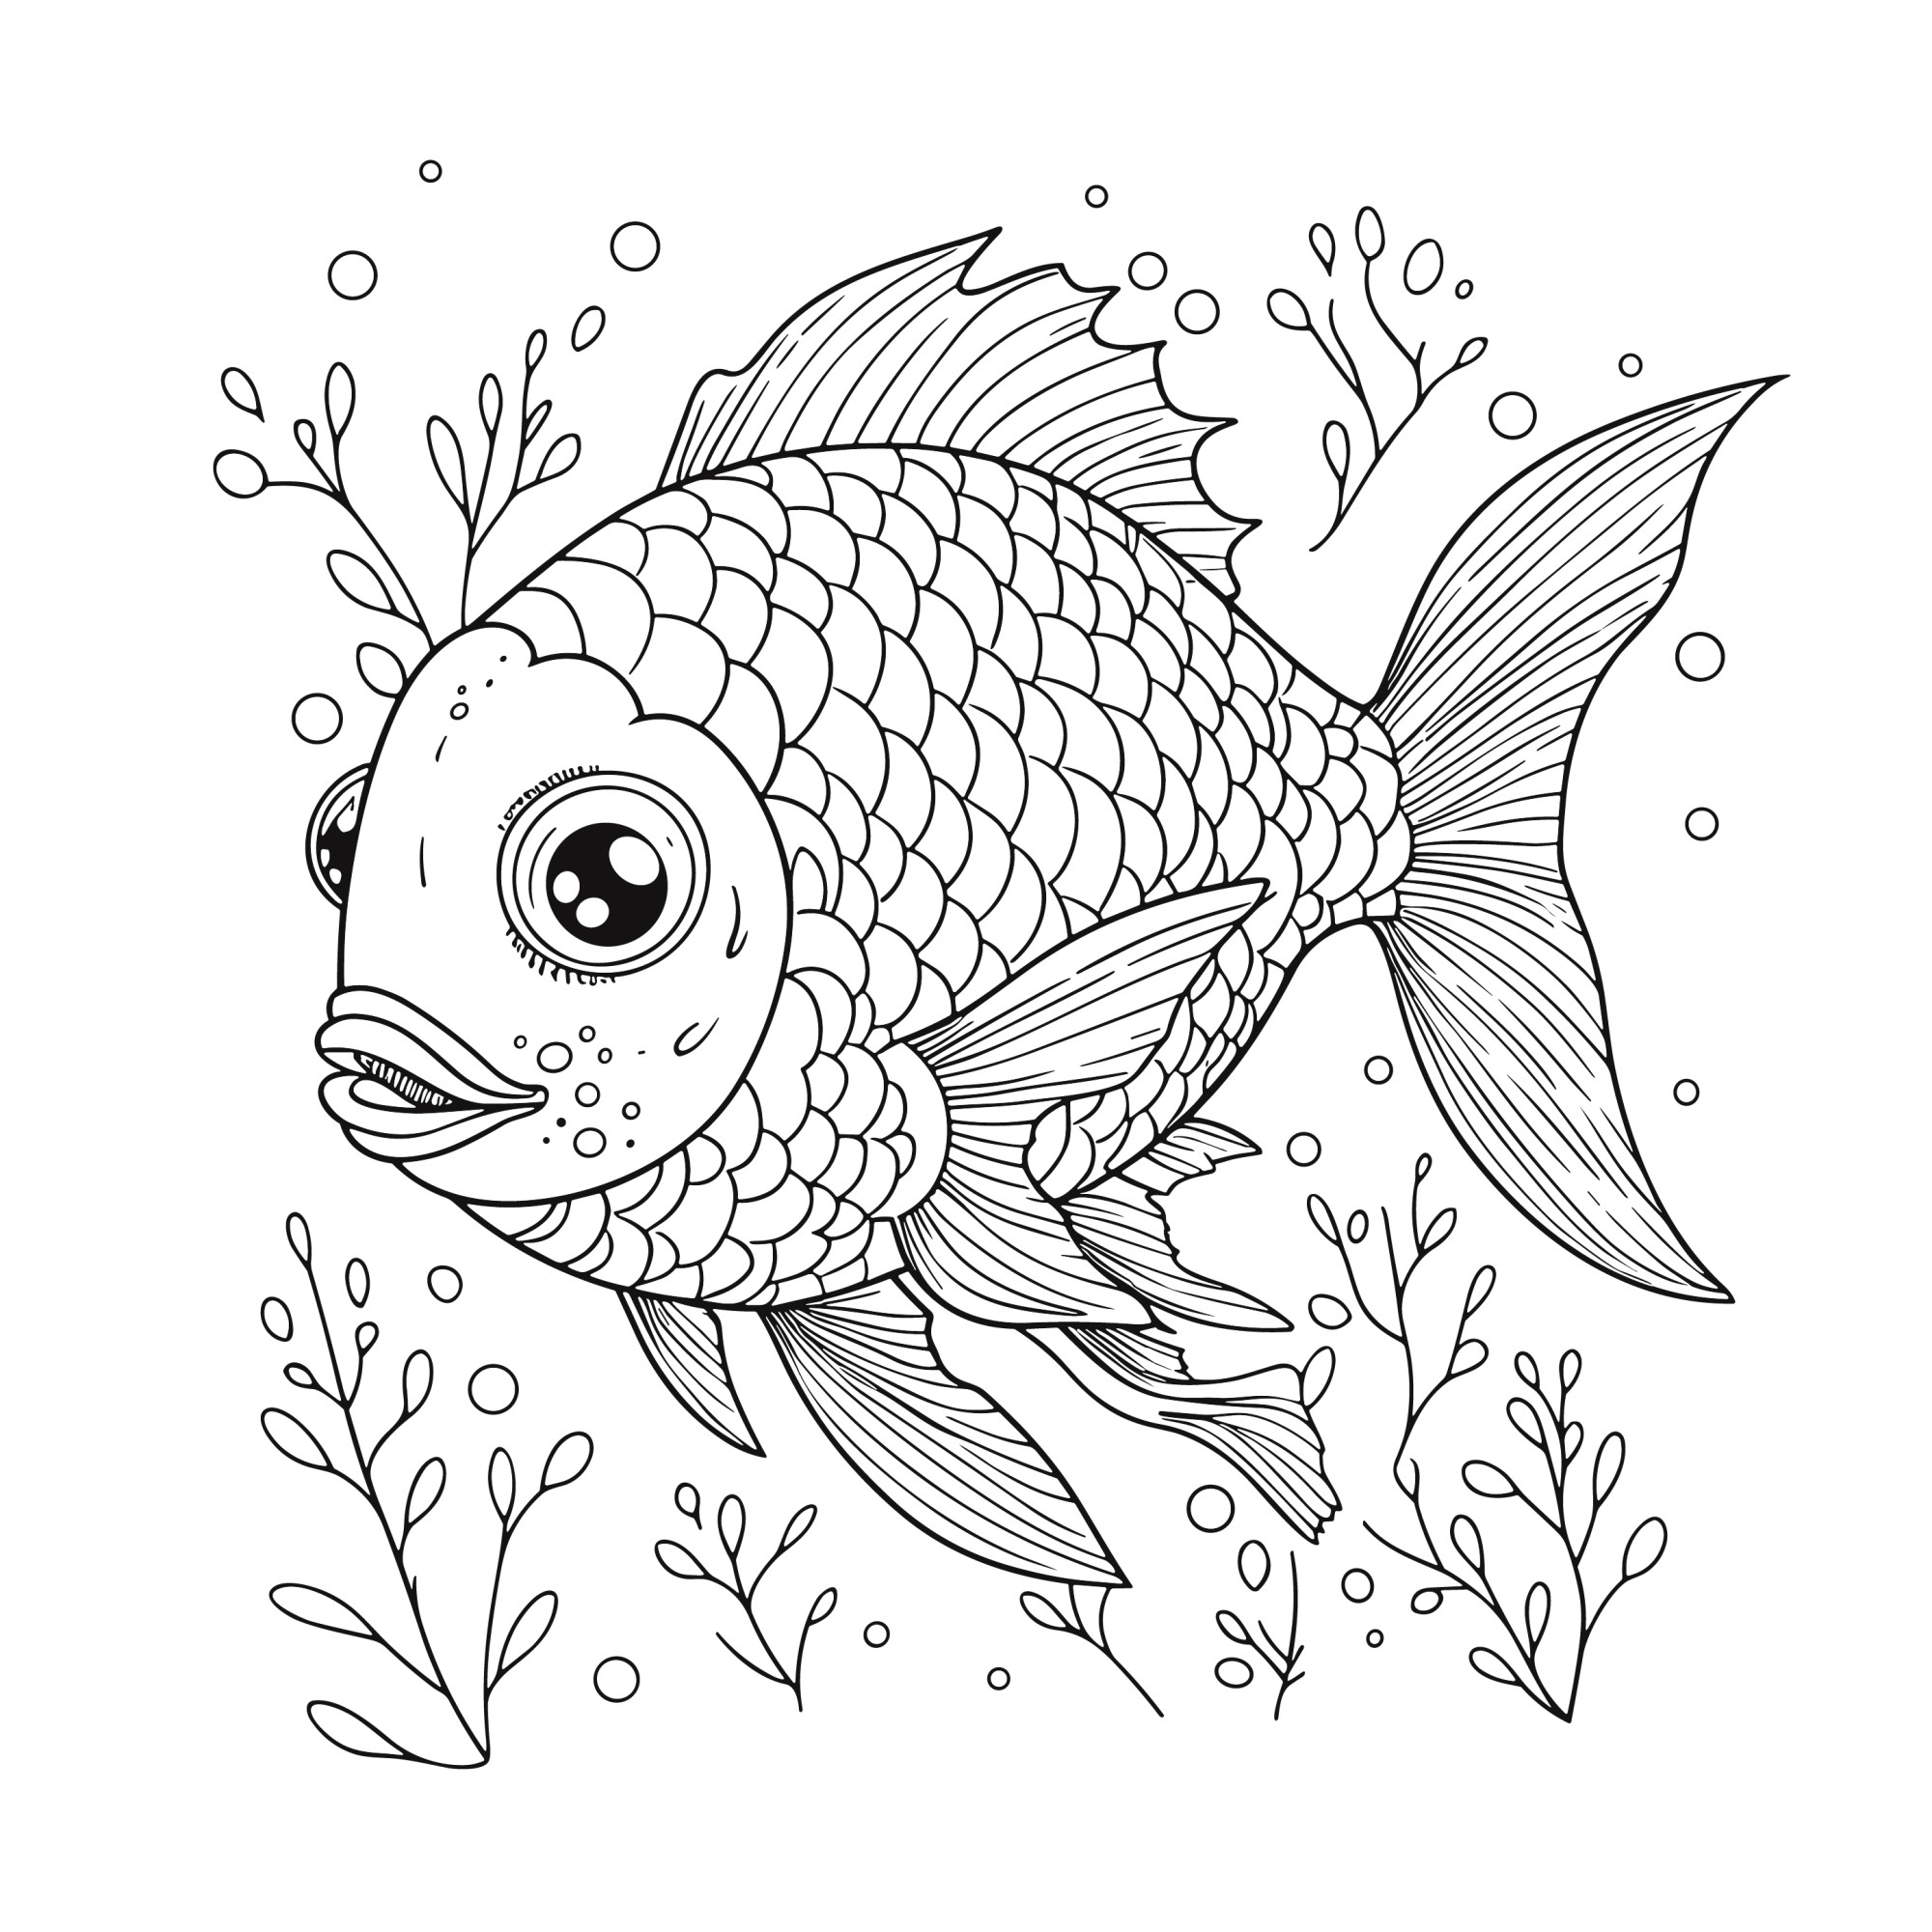 Раскраска для детей: рыба «Путь в глубину»